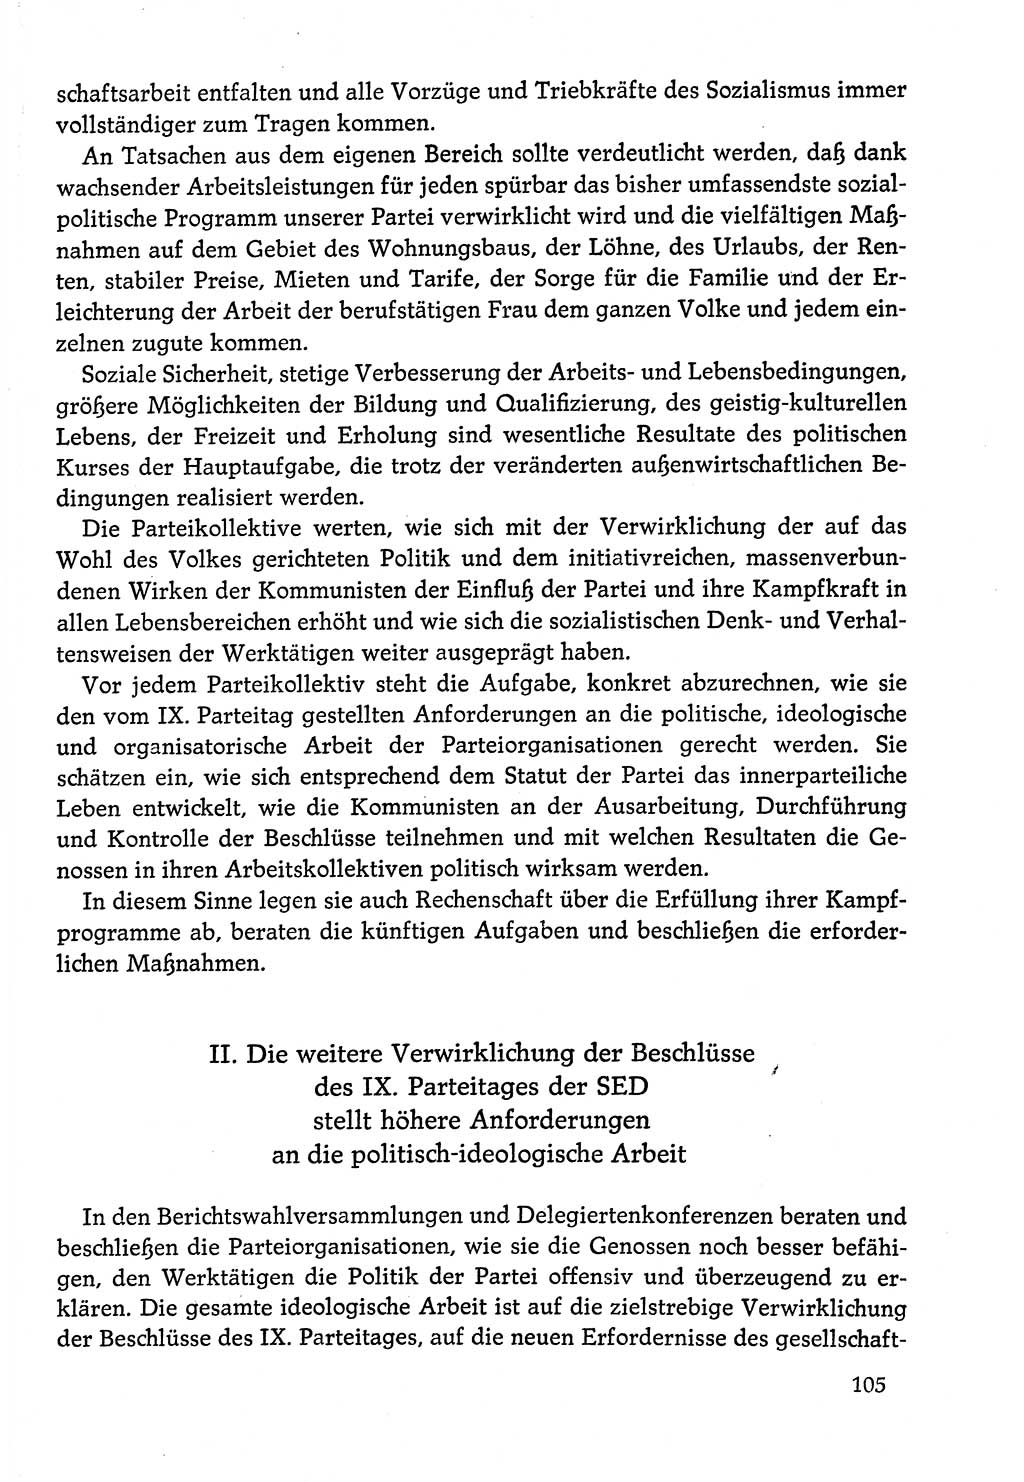 Dokumente der Sozialistischen Einheitspartei Deutschlands (SED) [Deutsche Demokratische Republik (DDR)] 1978-1979, Seite 105 (Dok. SED DDR 1978-1979, S. 105)